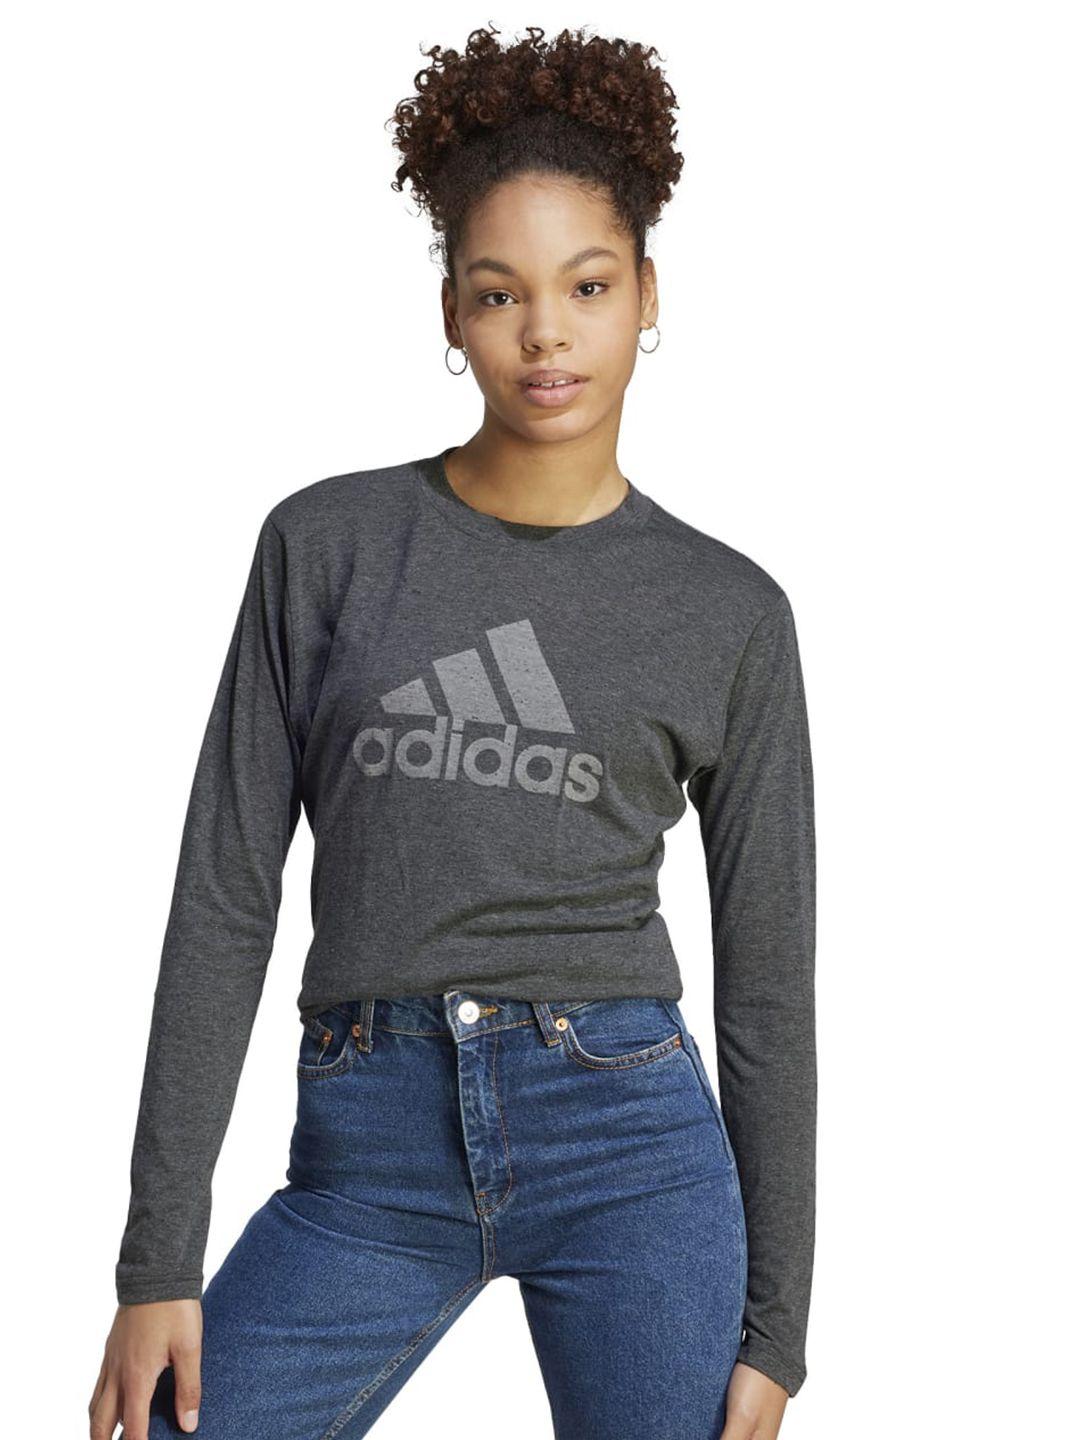 adidas brand logo printed slim-fit long sleeve t-shirt